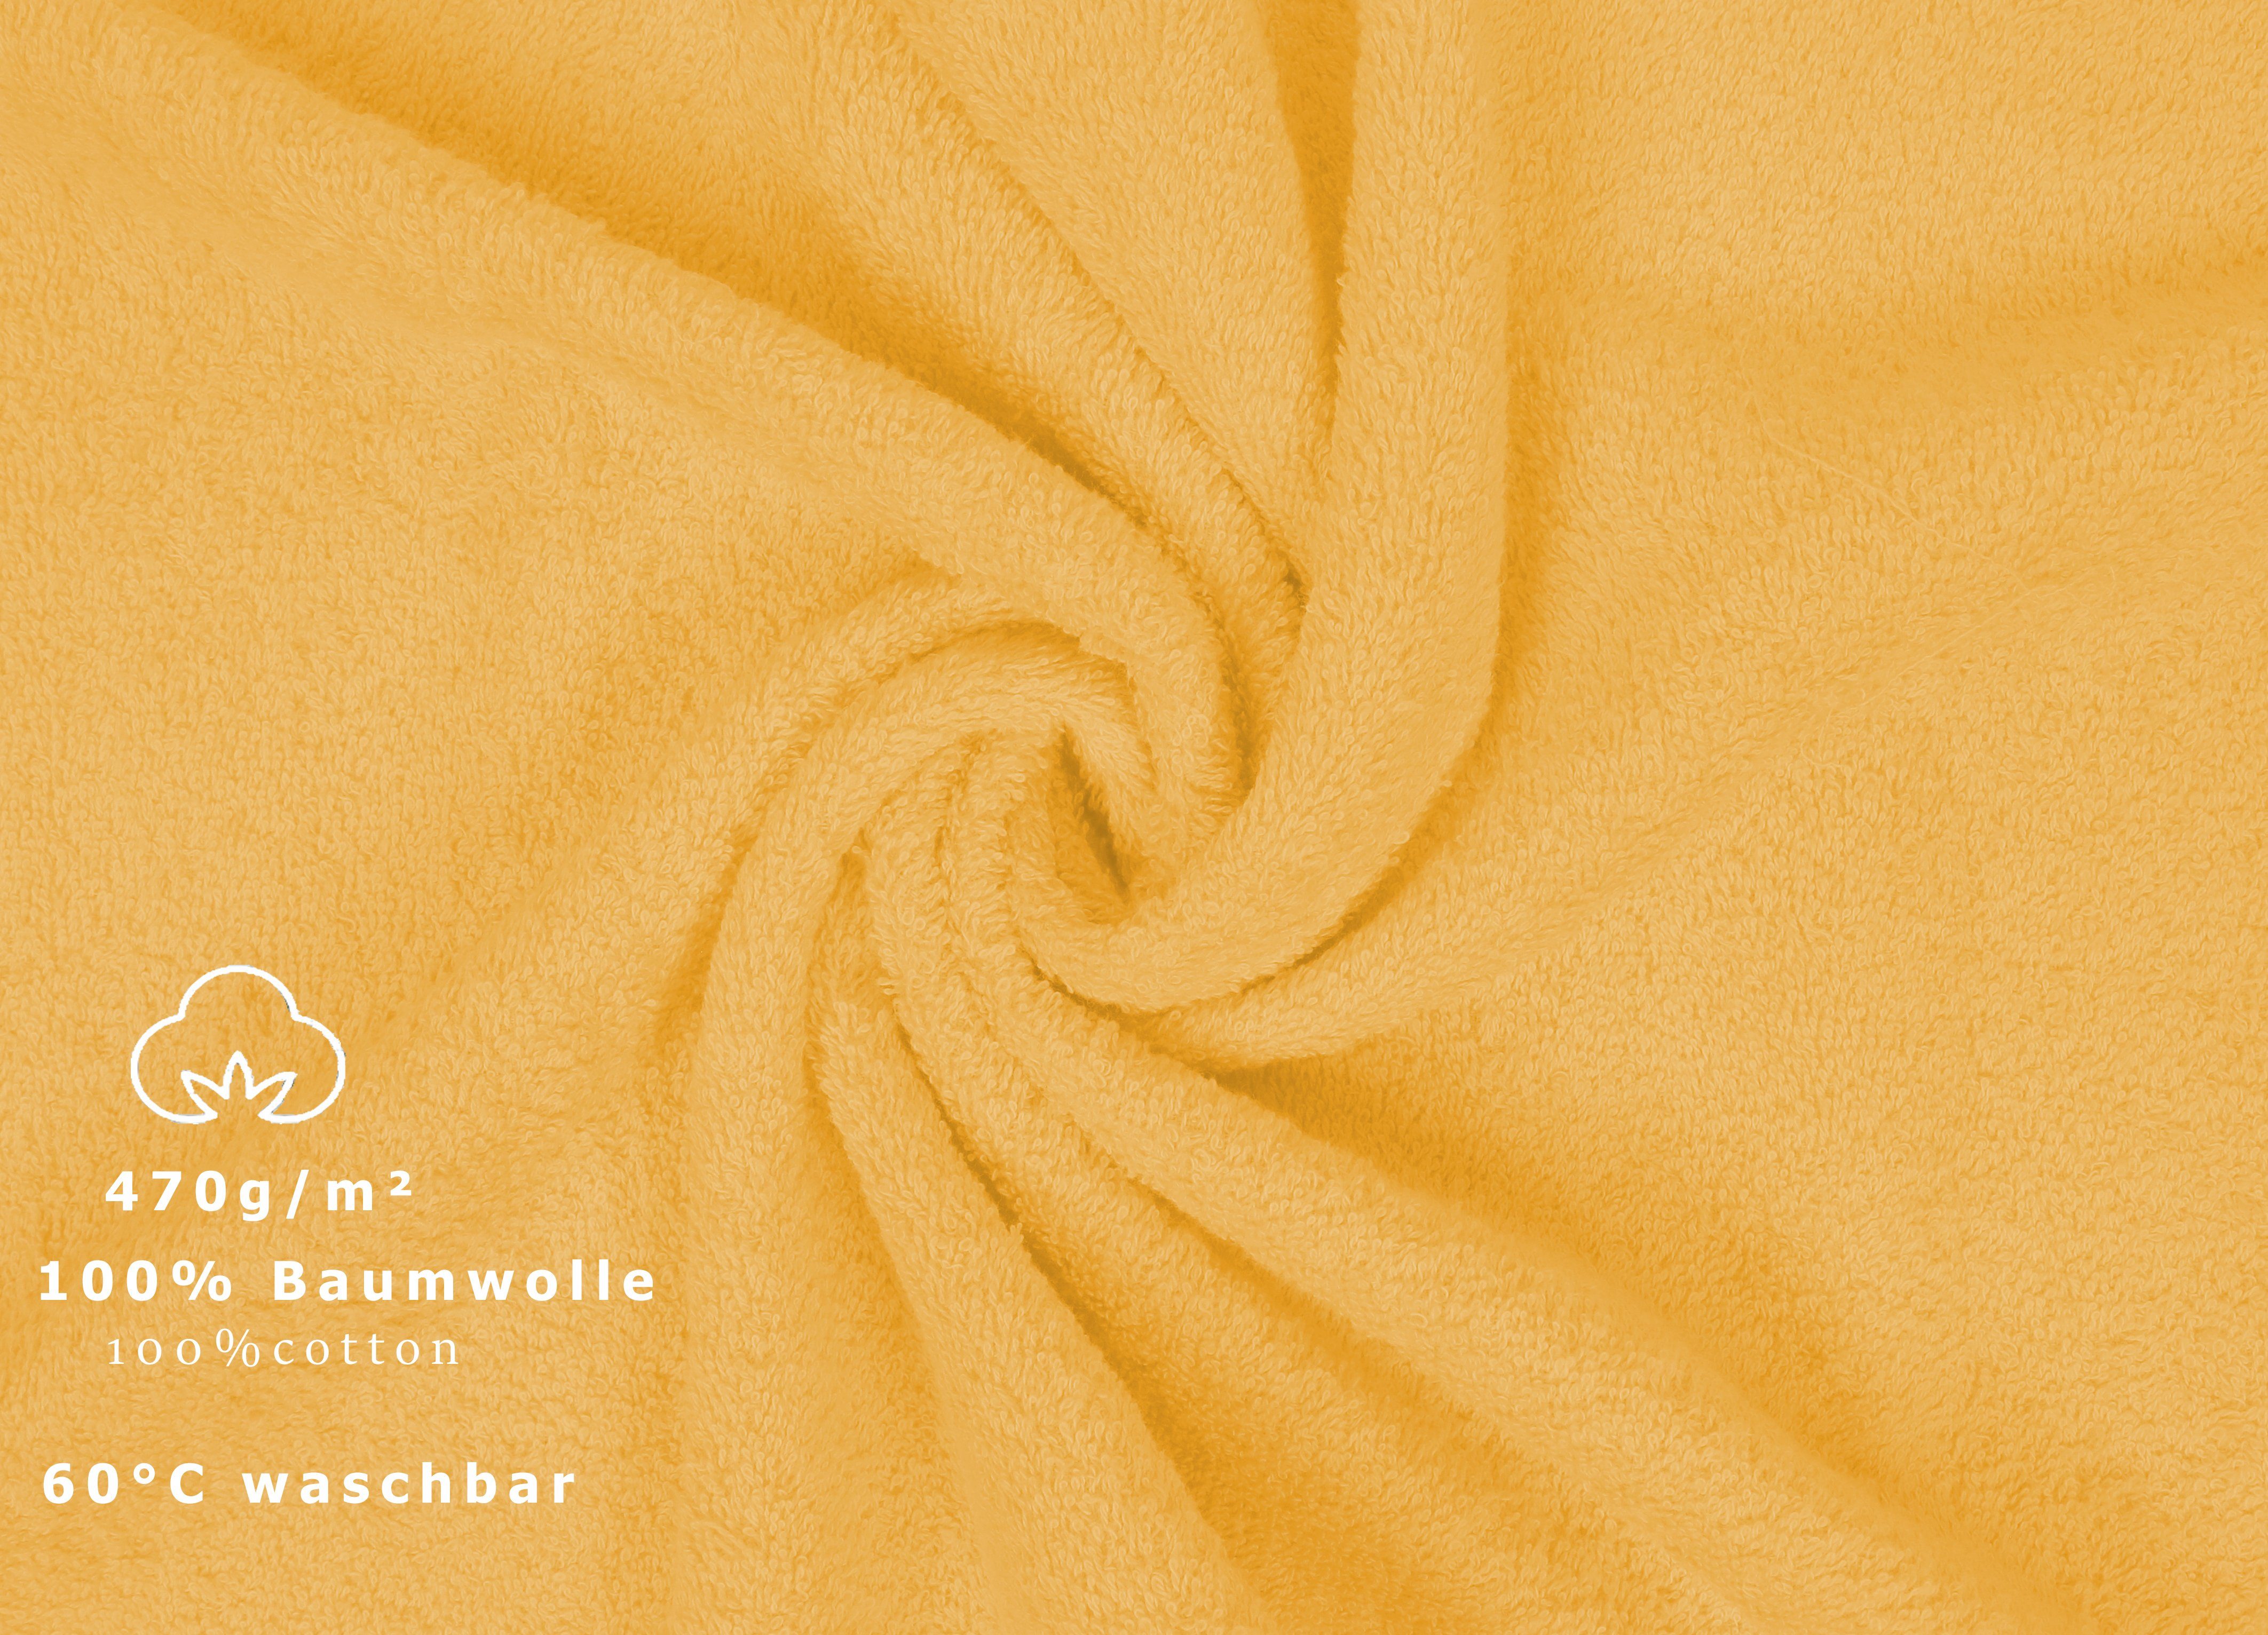 Betz Handtuch Set Baumwolle, Handtücher-Set-100% teiliges Baumwolle, PREMIUM 100% -6 (6-tlg) honiggelb Handtuch-Set Betz